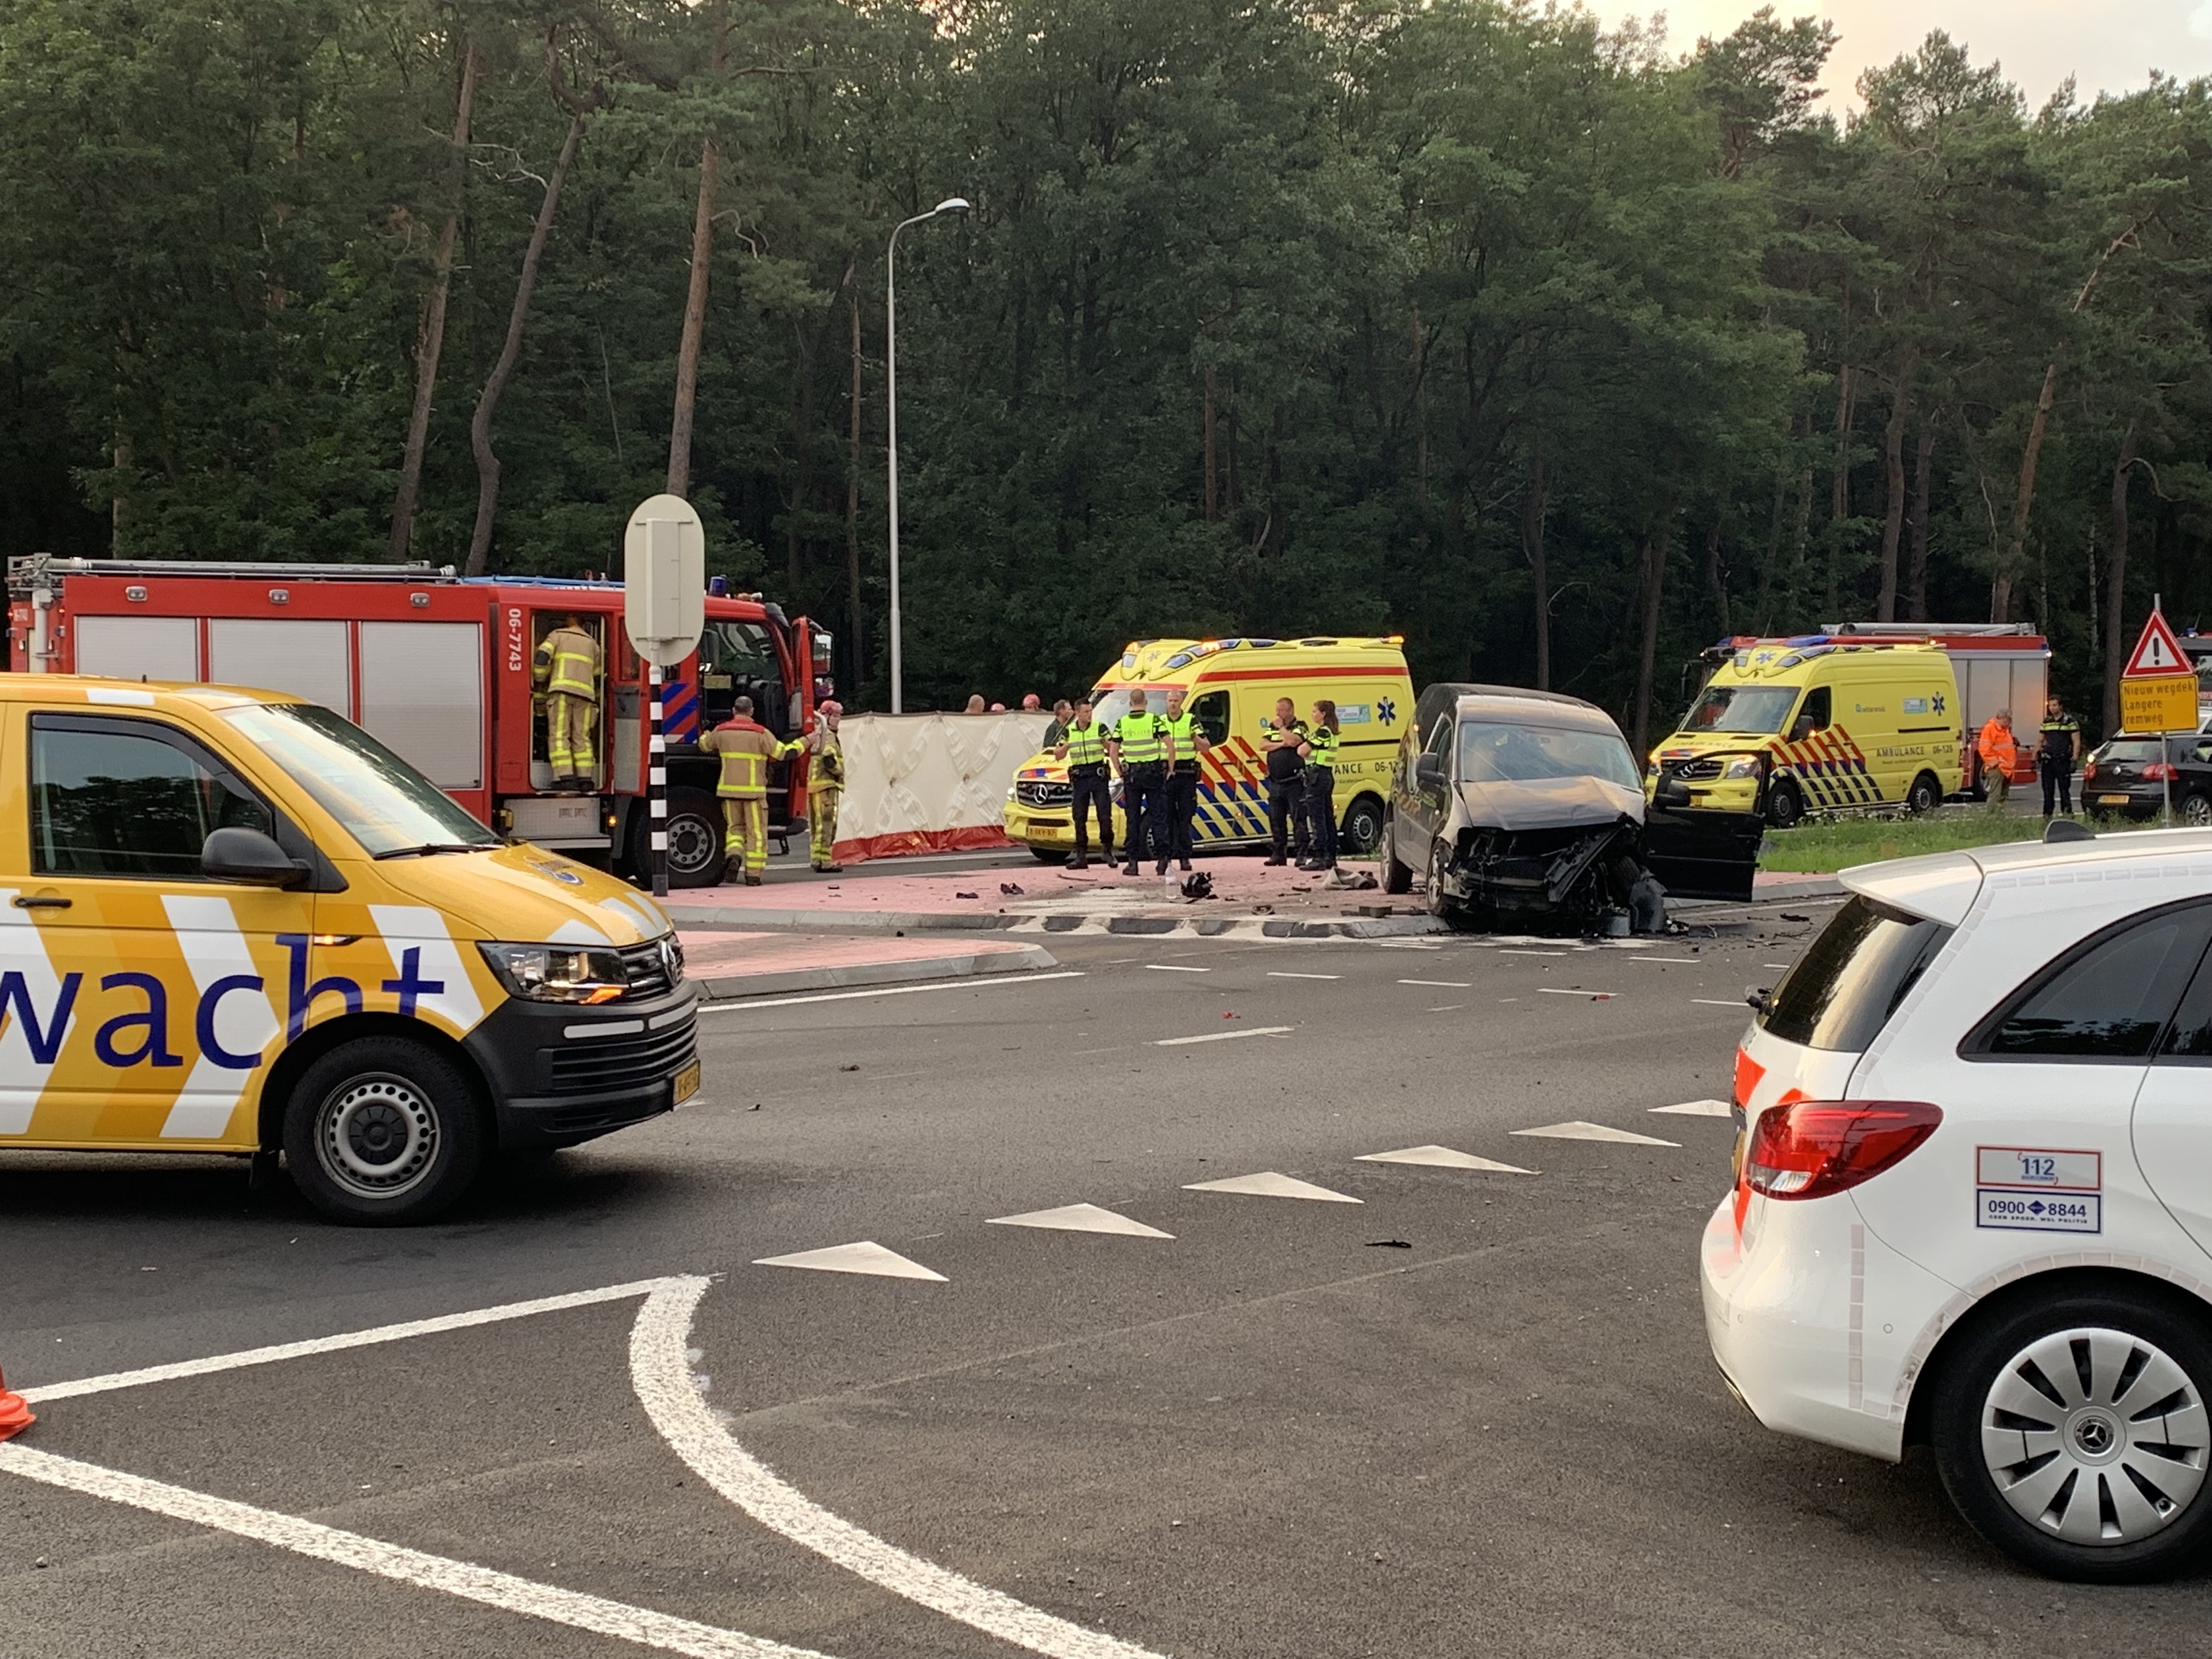 Ernstig ongeval met drie gewonden op de Europaweg in Ugchelen